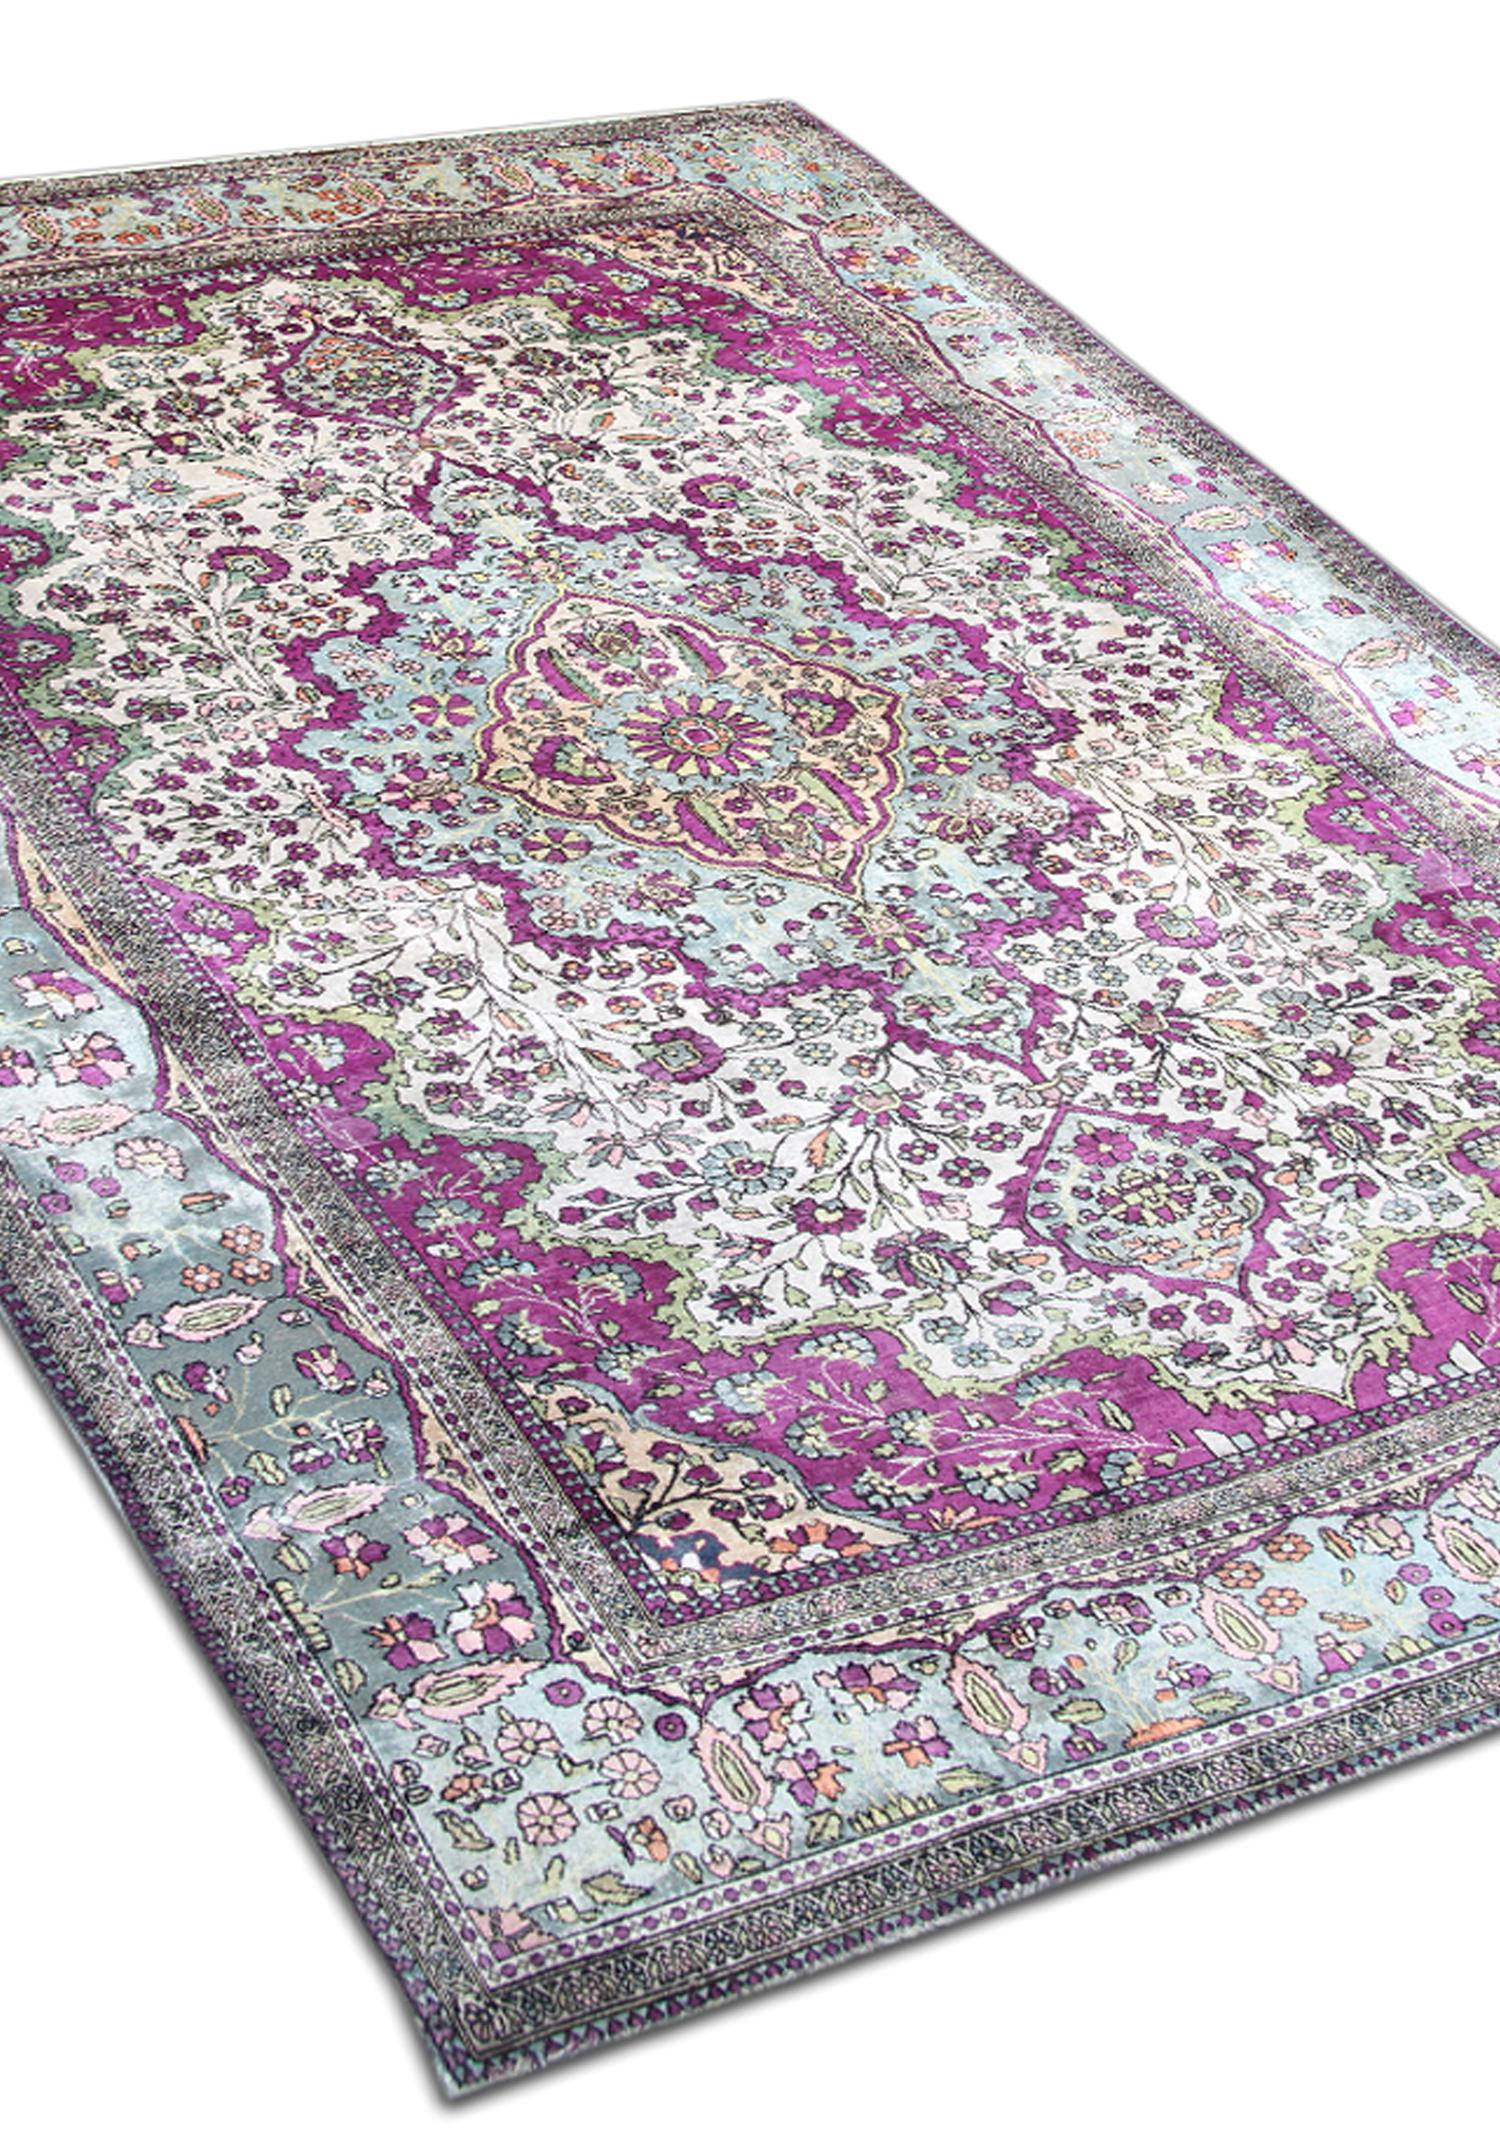 Ce magnifique et rare tapis en soie est un excellent exemple des tapis en soie tissés dans les années 1880. Le design présente un médaillon traditionnel avec des motifs floraux. Nous mettons en avant des accents ivoires, bleus et violets.